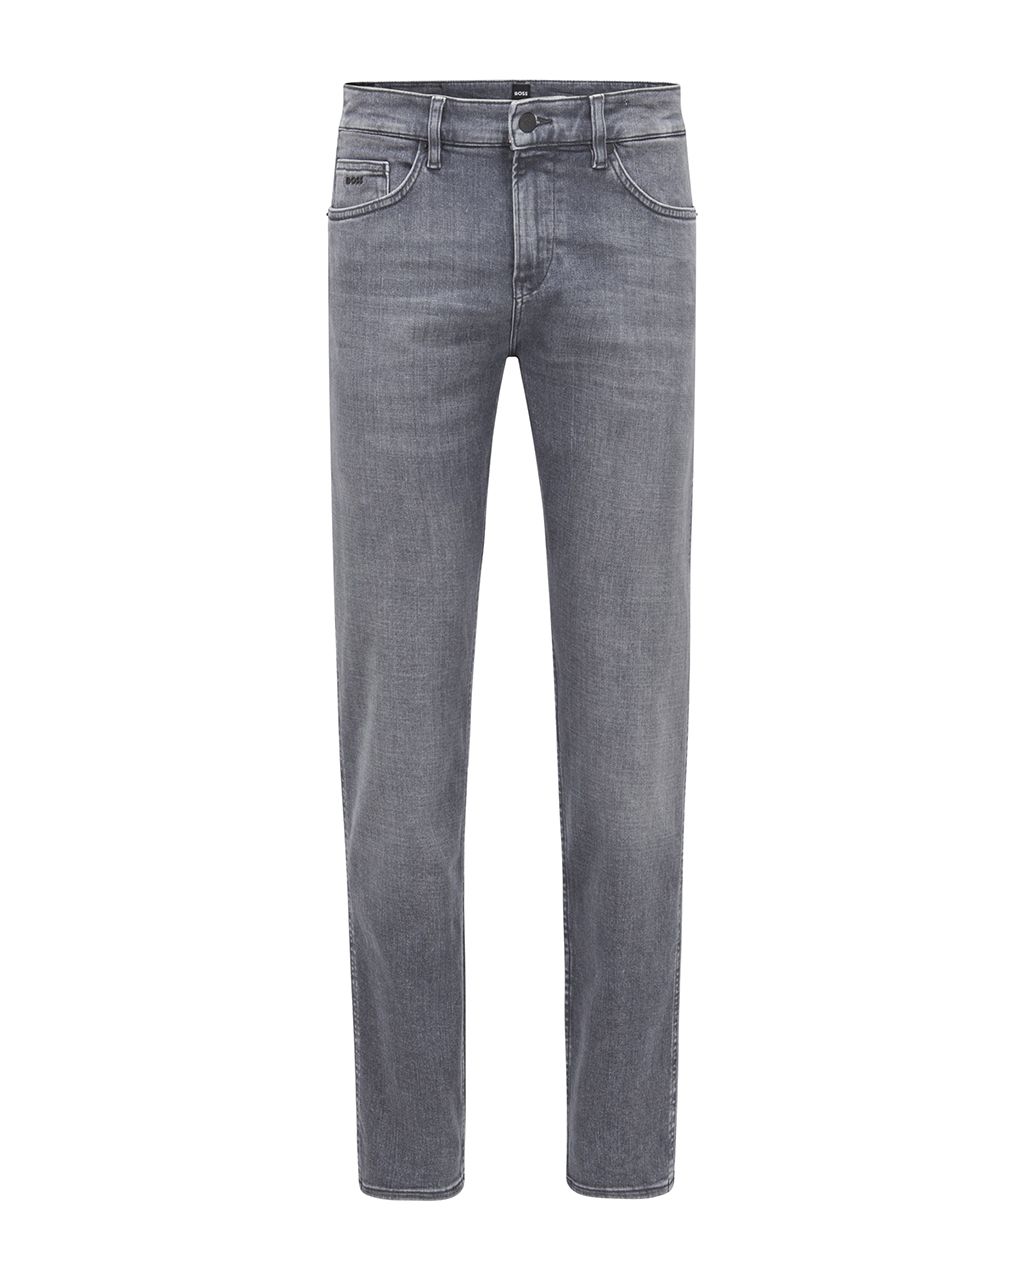 Hugo Boss Menswear Delaware Jeans Grijs 076340-001-31/32